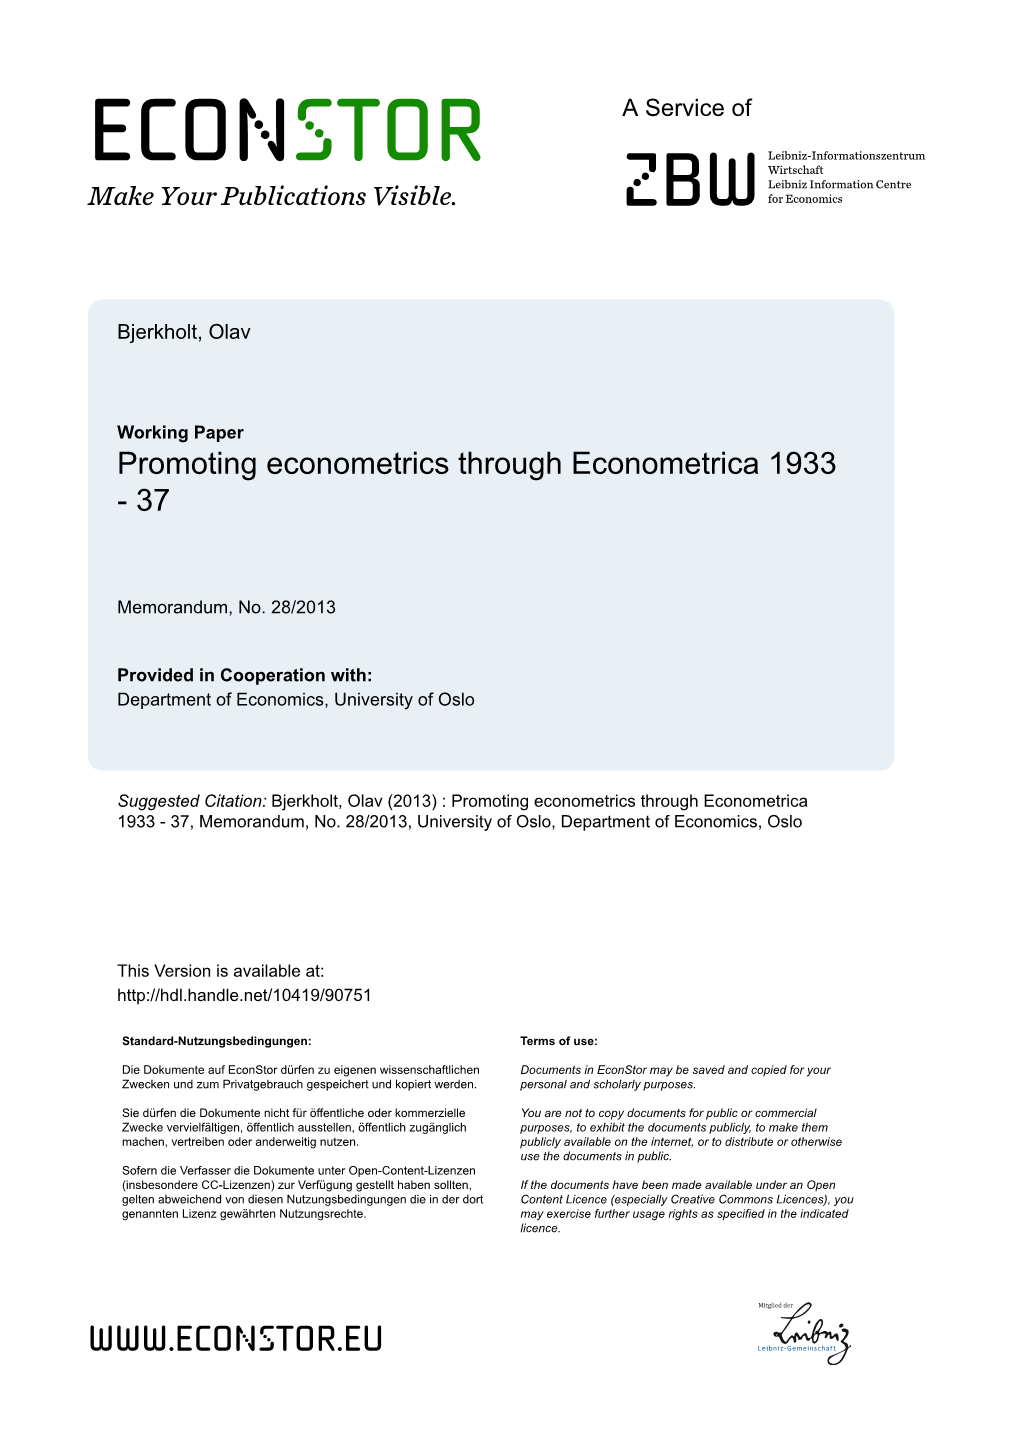 Promoting Econometrics Through Econometrica 1933 - 37